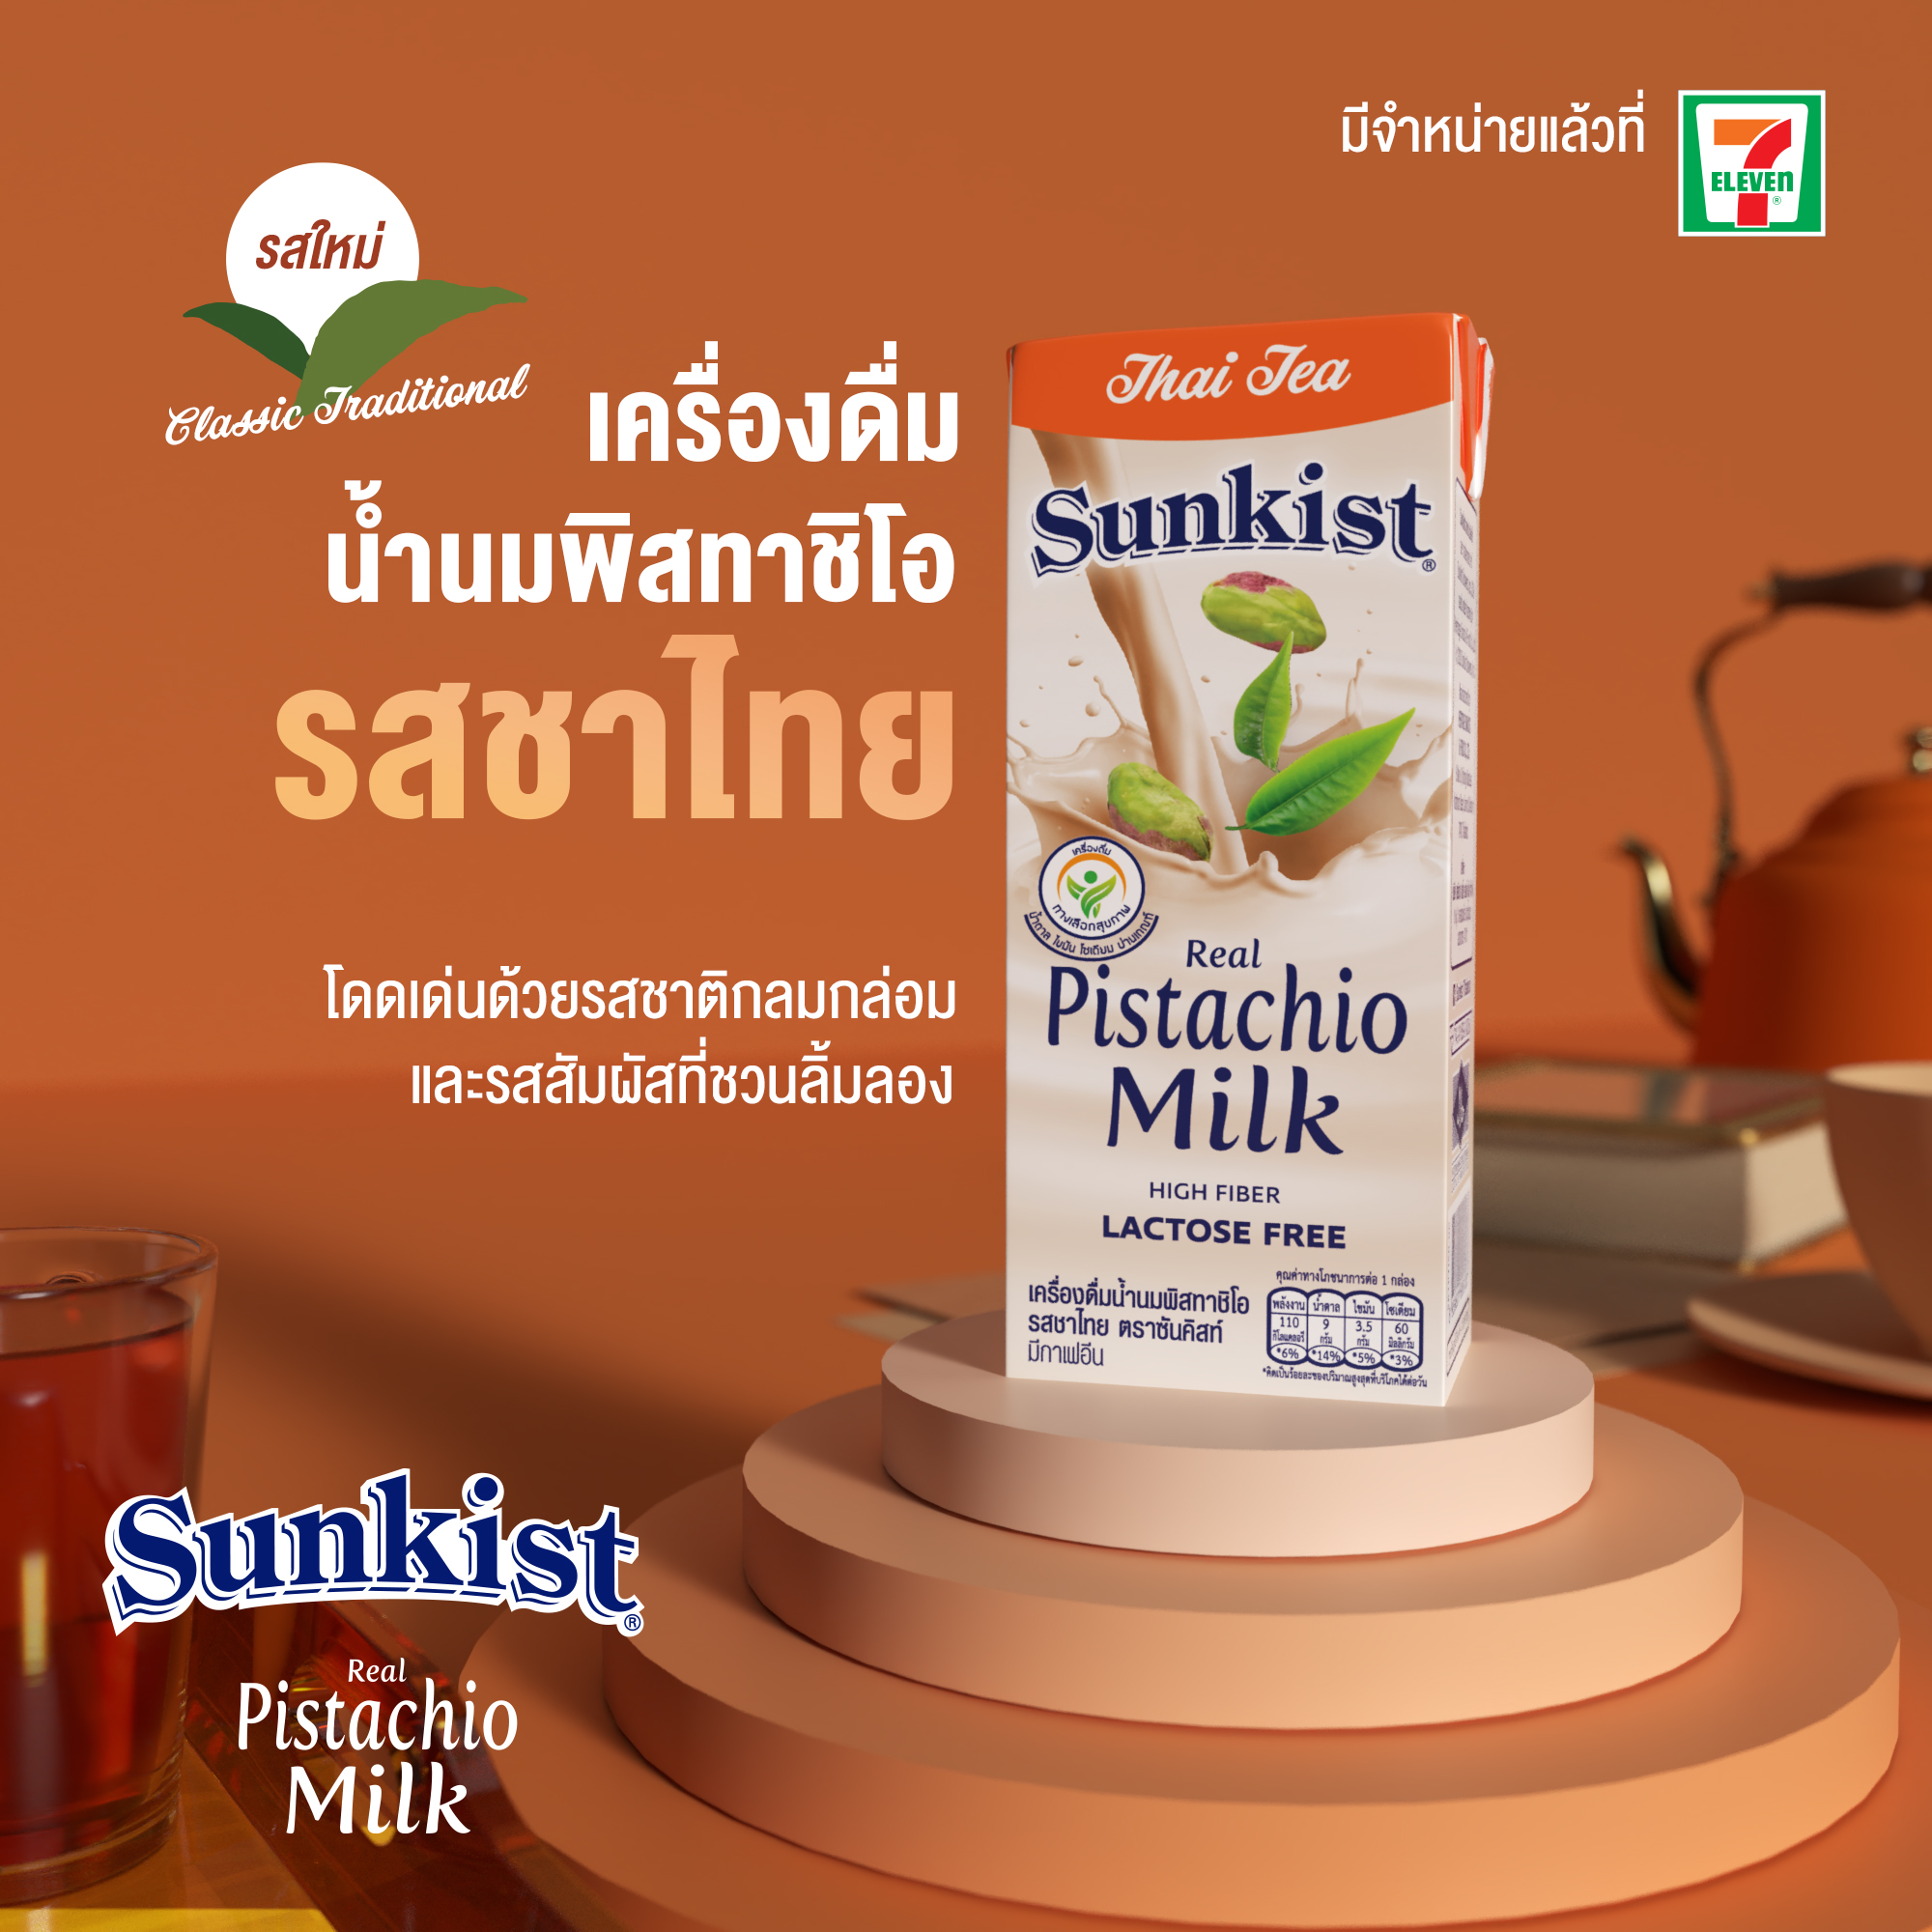 ซันคิสท์เดินหน้าเสิร์ฟความอร่อยครั้งใหม่ เปิดตัว นมพิสทาชิโอรสชาไทย ครั้งแรกในประเทศไทย